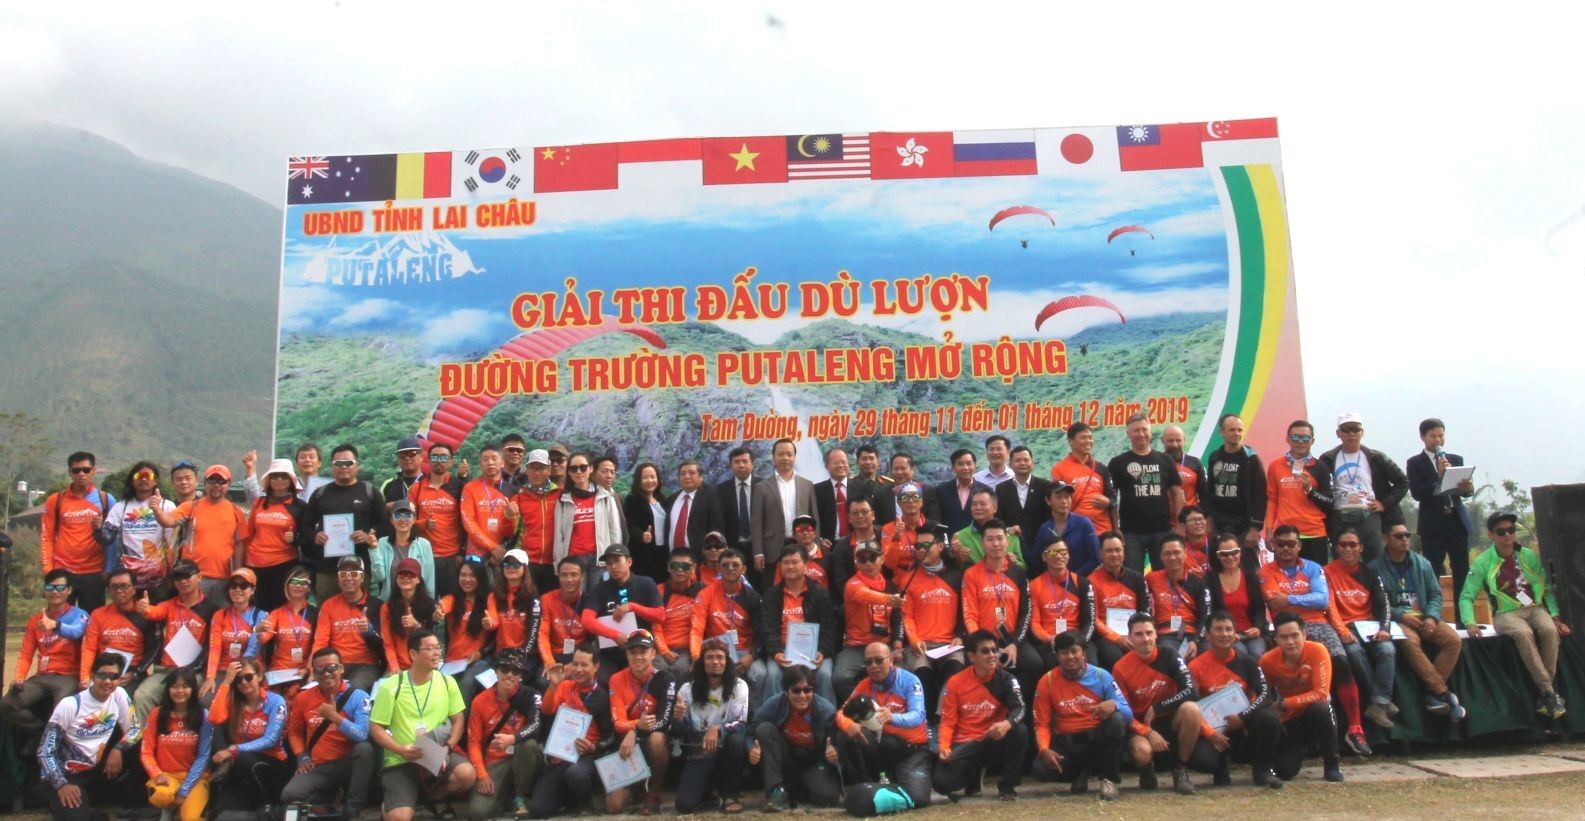 Giải dù lượn đường trường Pu Ta Leng Việt Nam sẽ có khoảng 100 phi công tham gia.